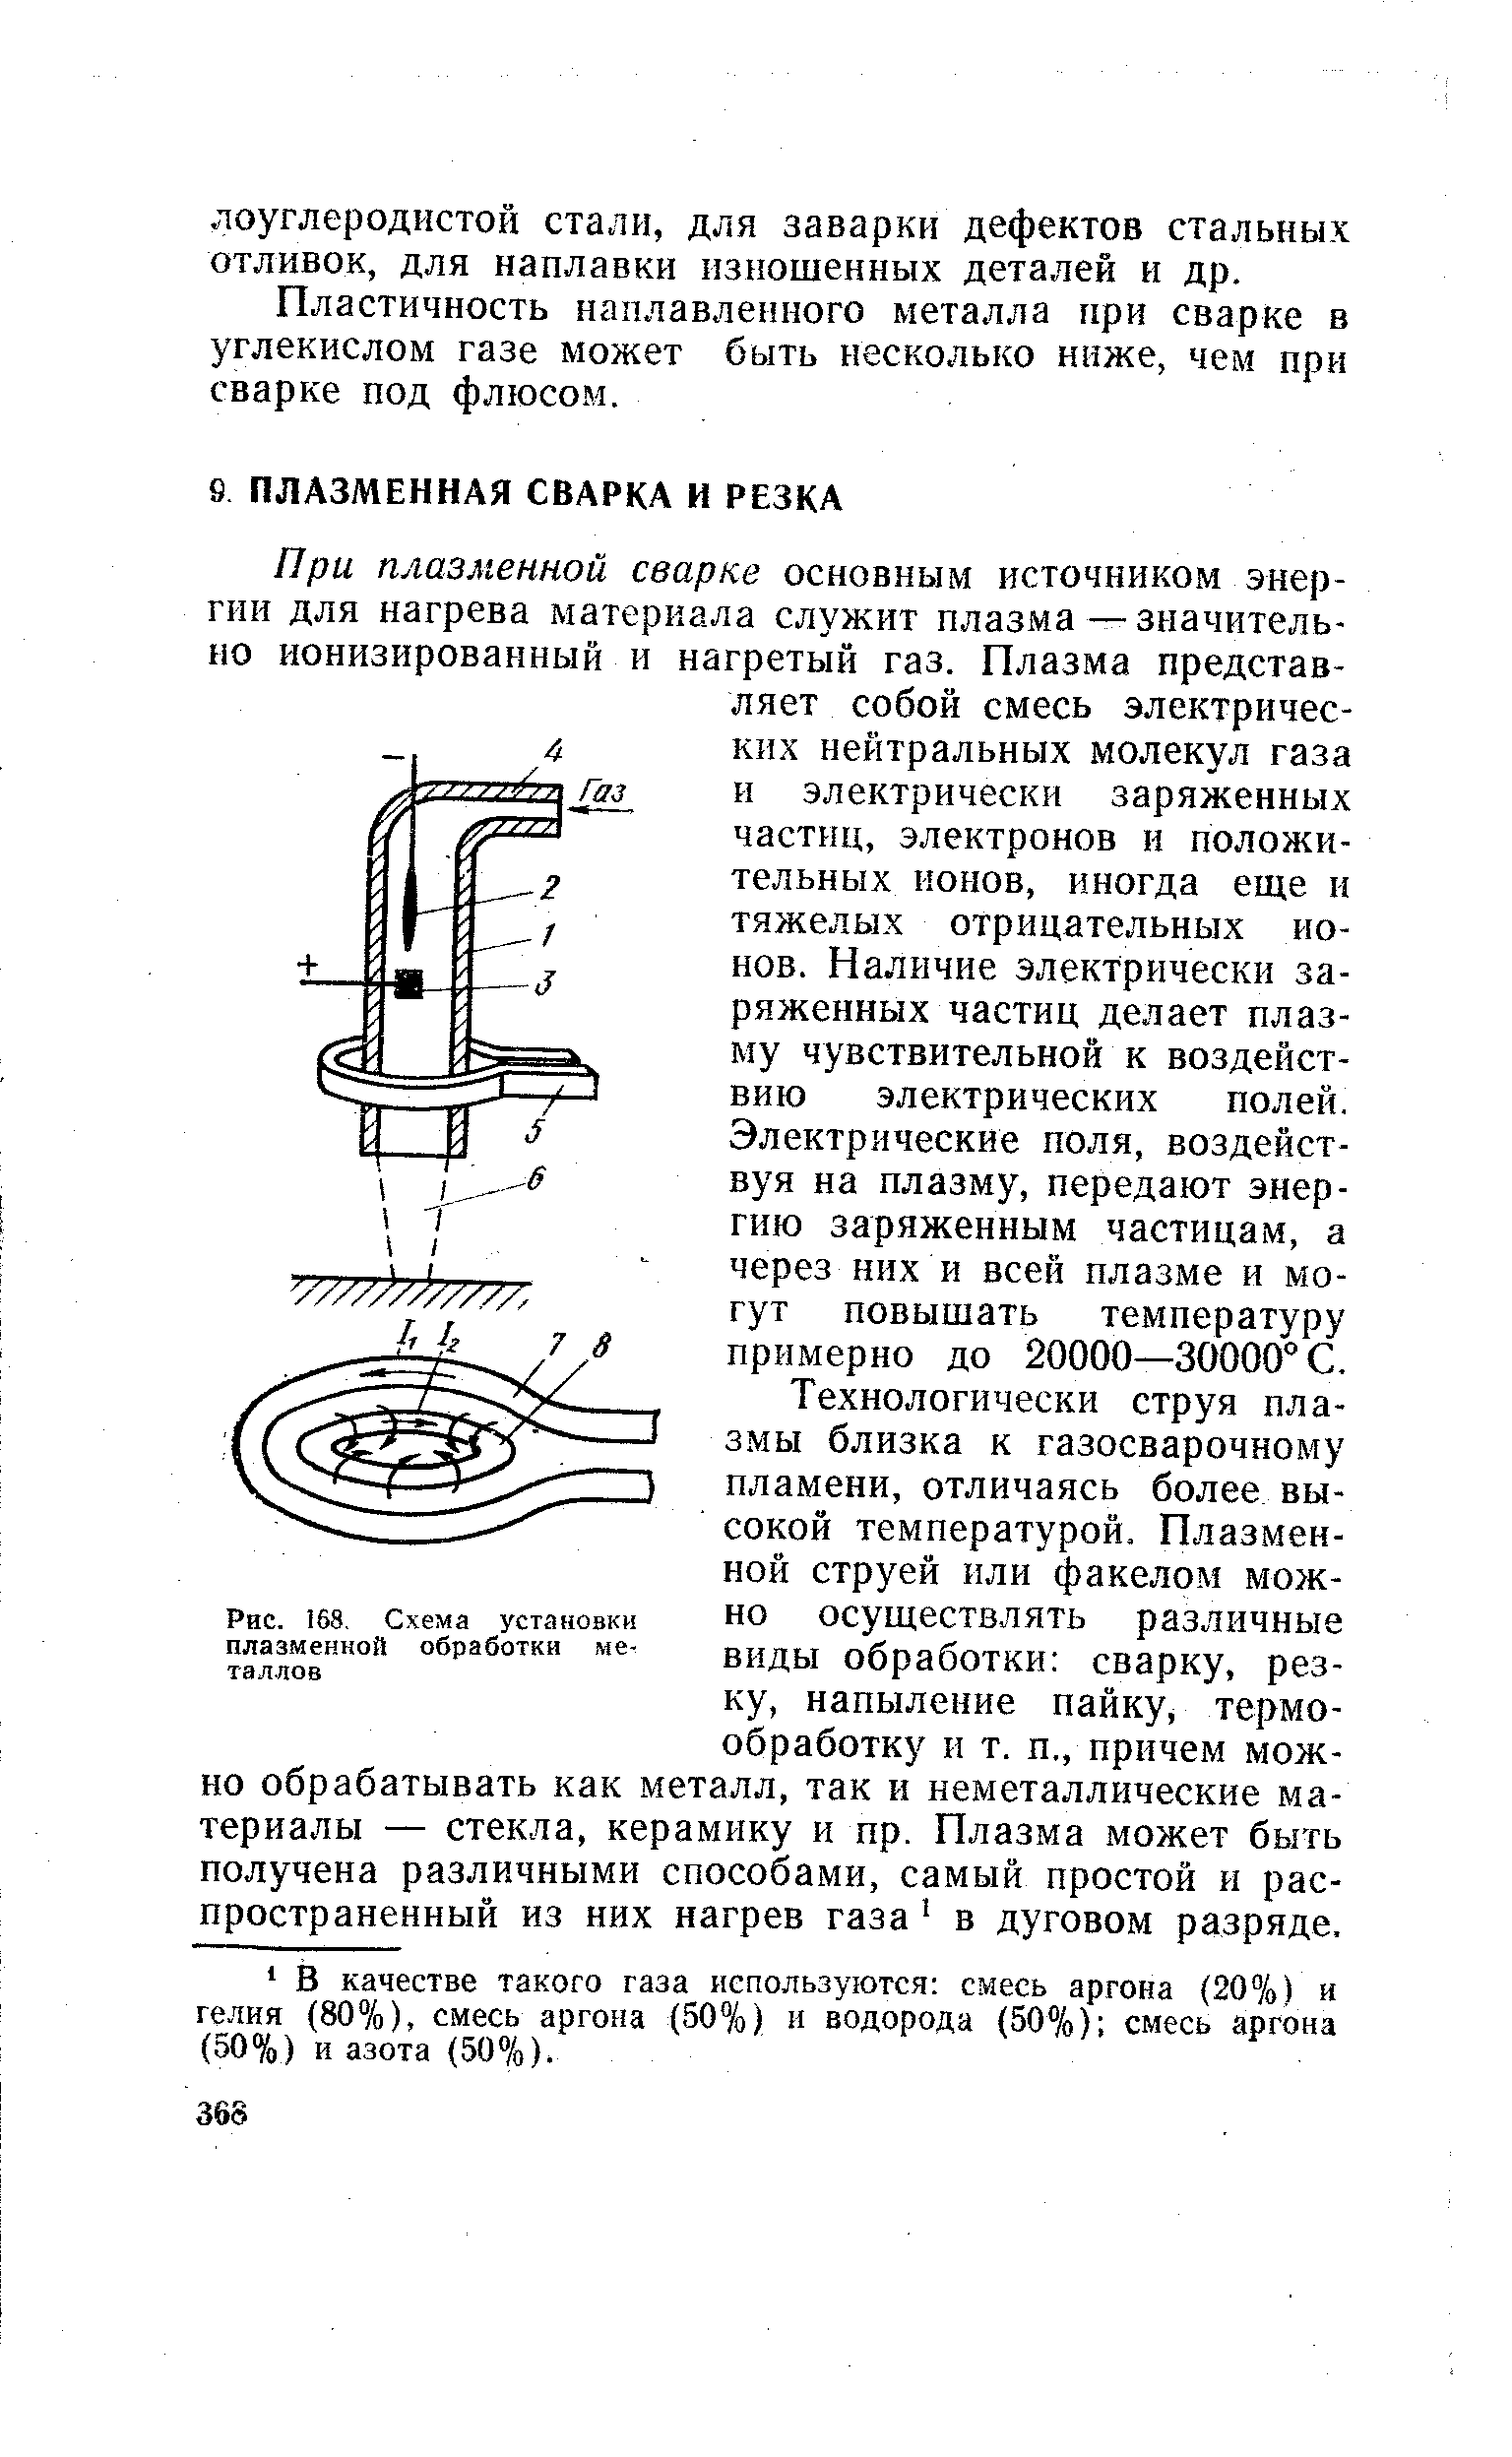 Рис. 168, Схема установки плазменной обработки металлов
